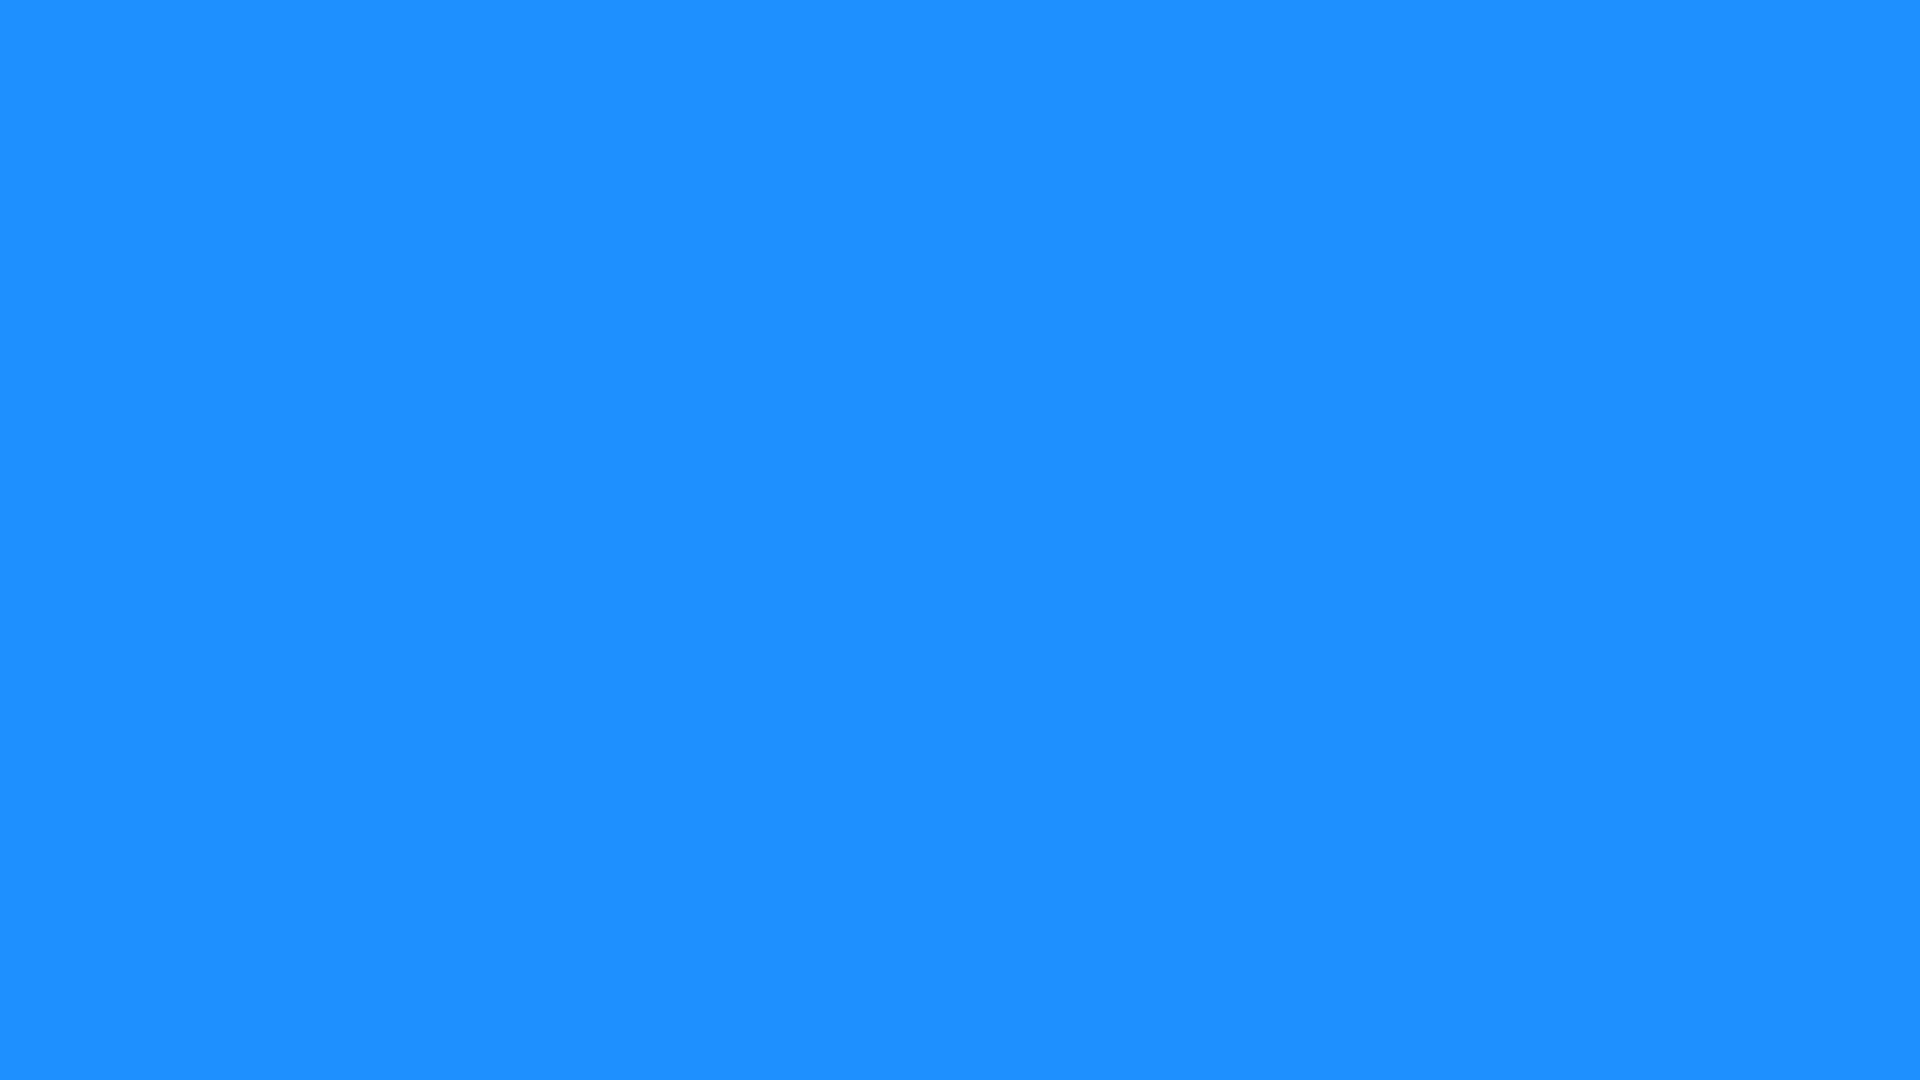 Dodger Blue Wallpaper High Definition Quality Widescreen